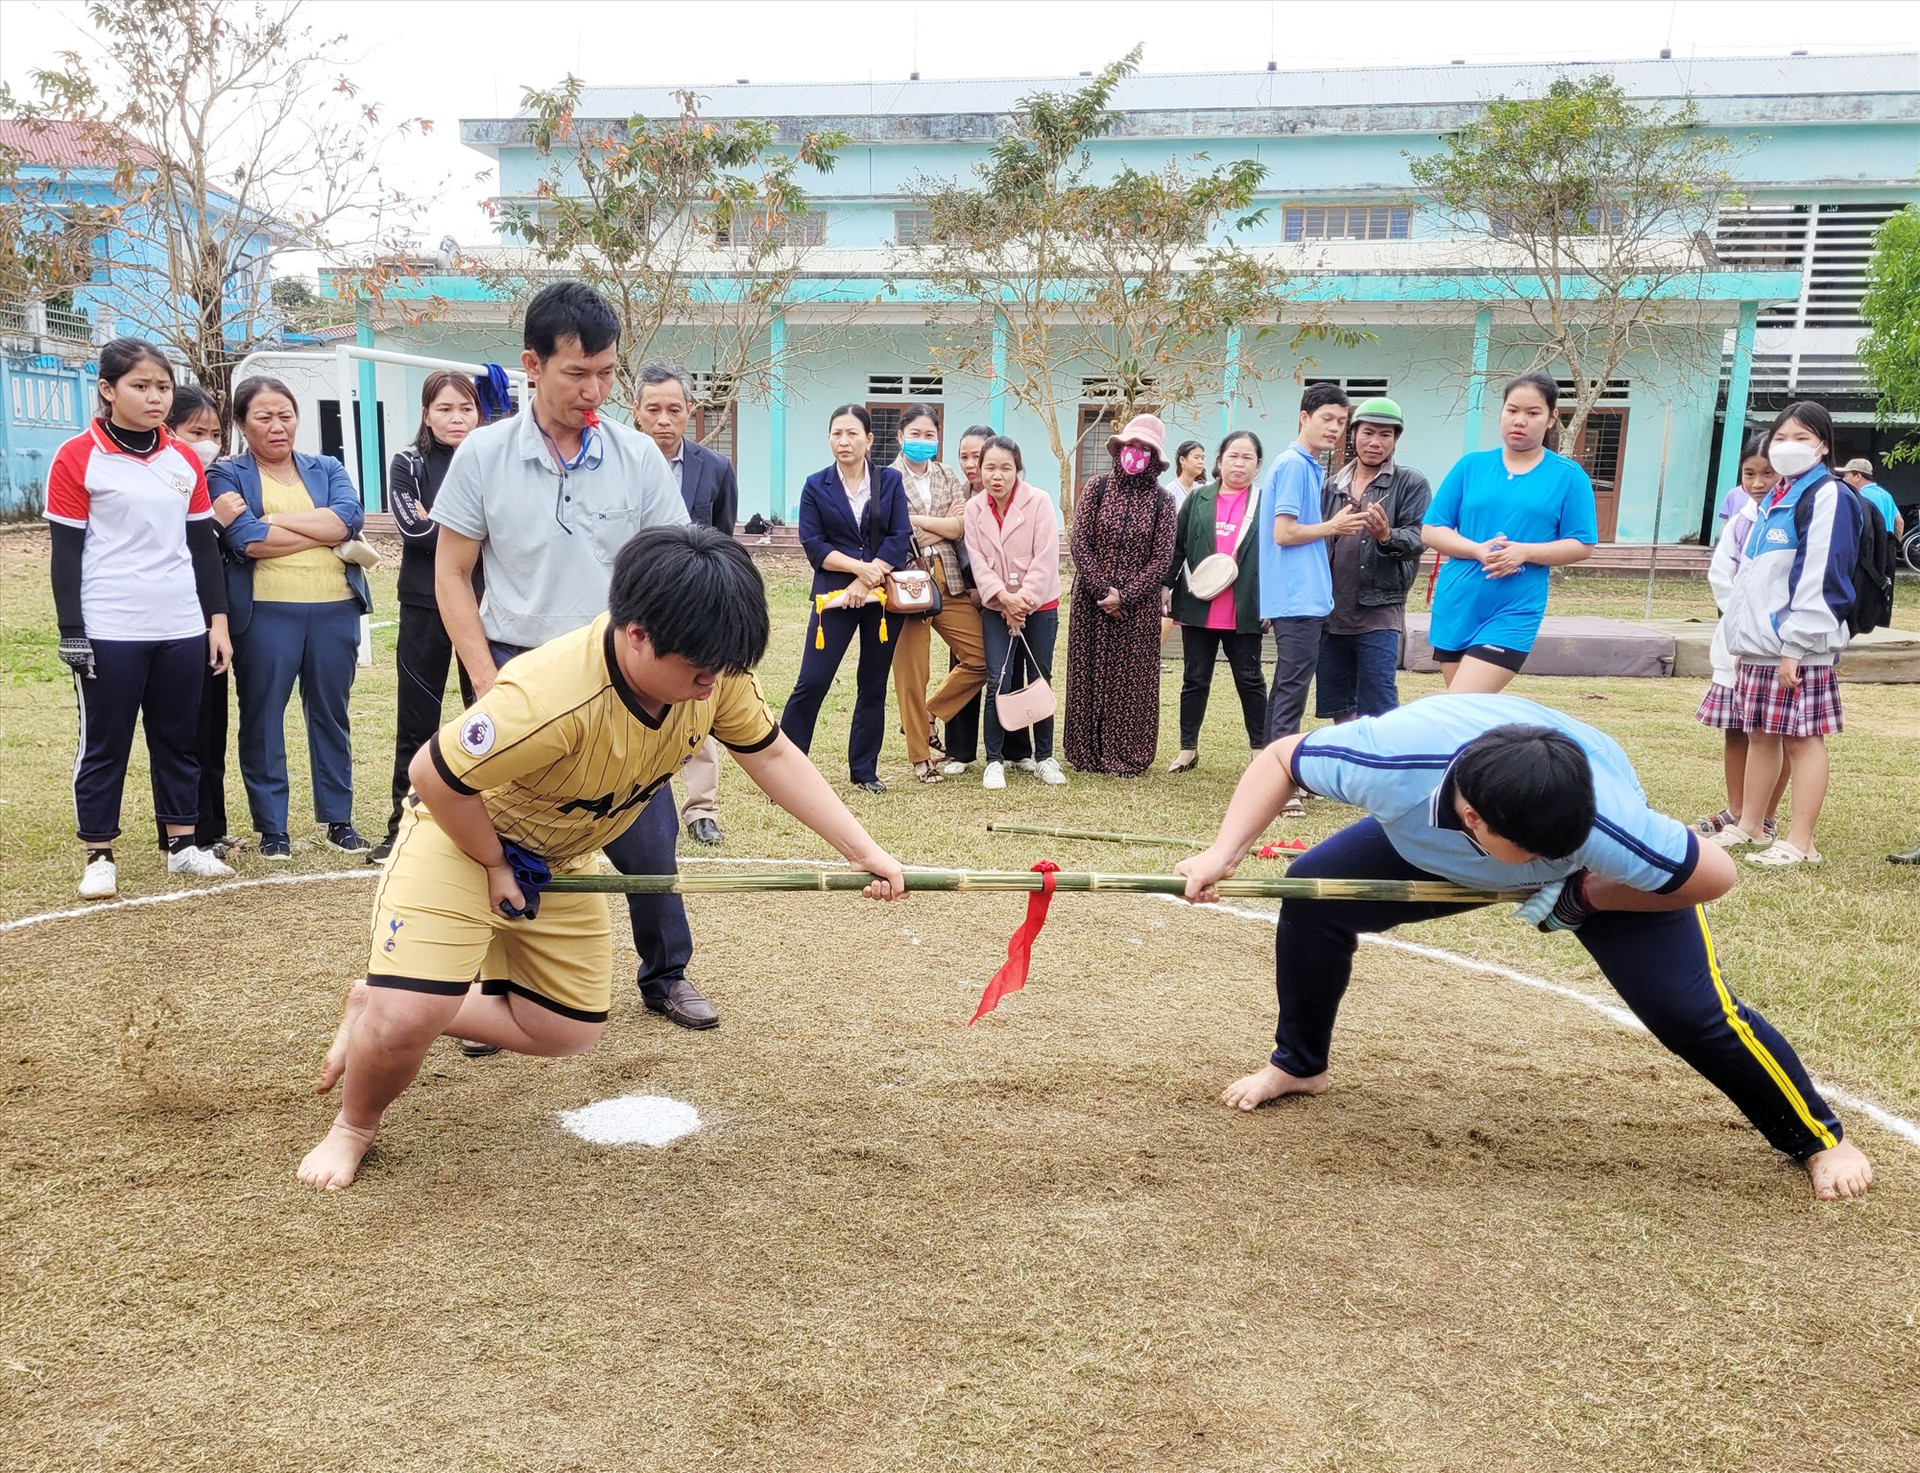 Hằng năm, ngành giáo dục huyện Nông Sơn định kỳ tổ chức giải thể thao cho học sinh. Ảnh: T.T